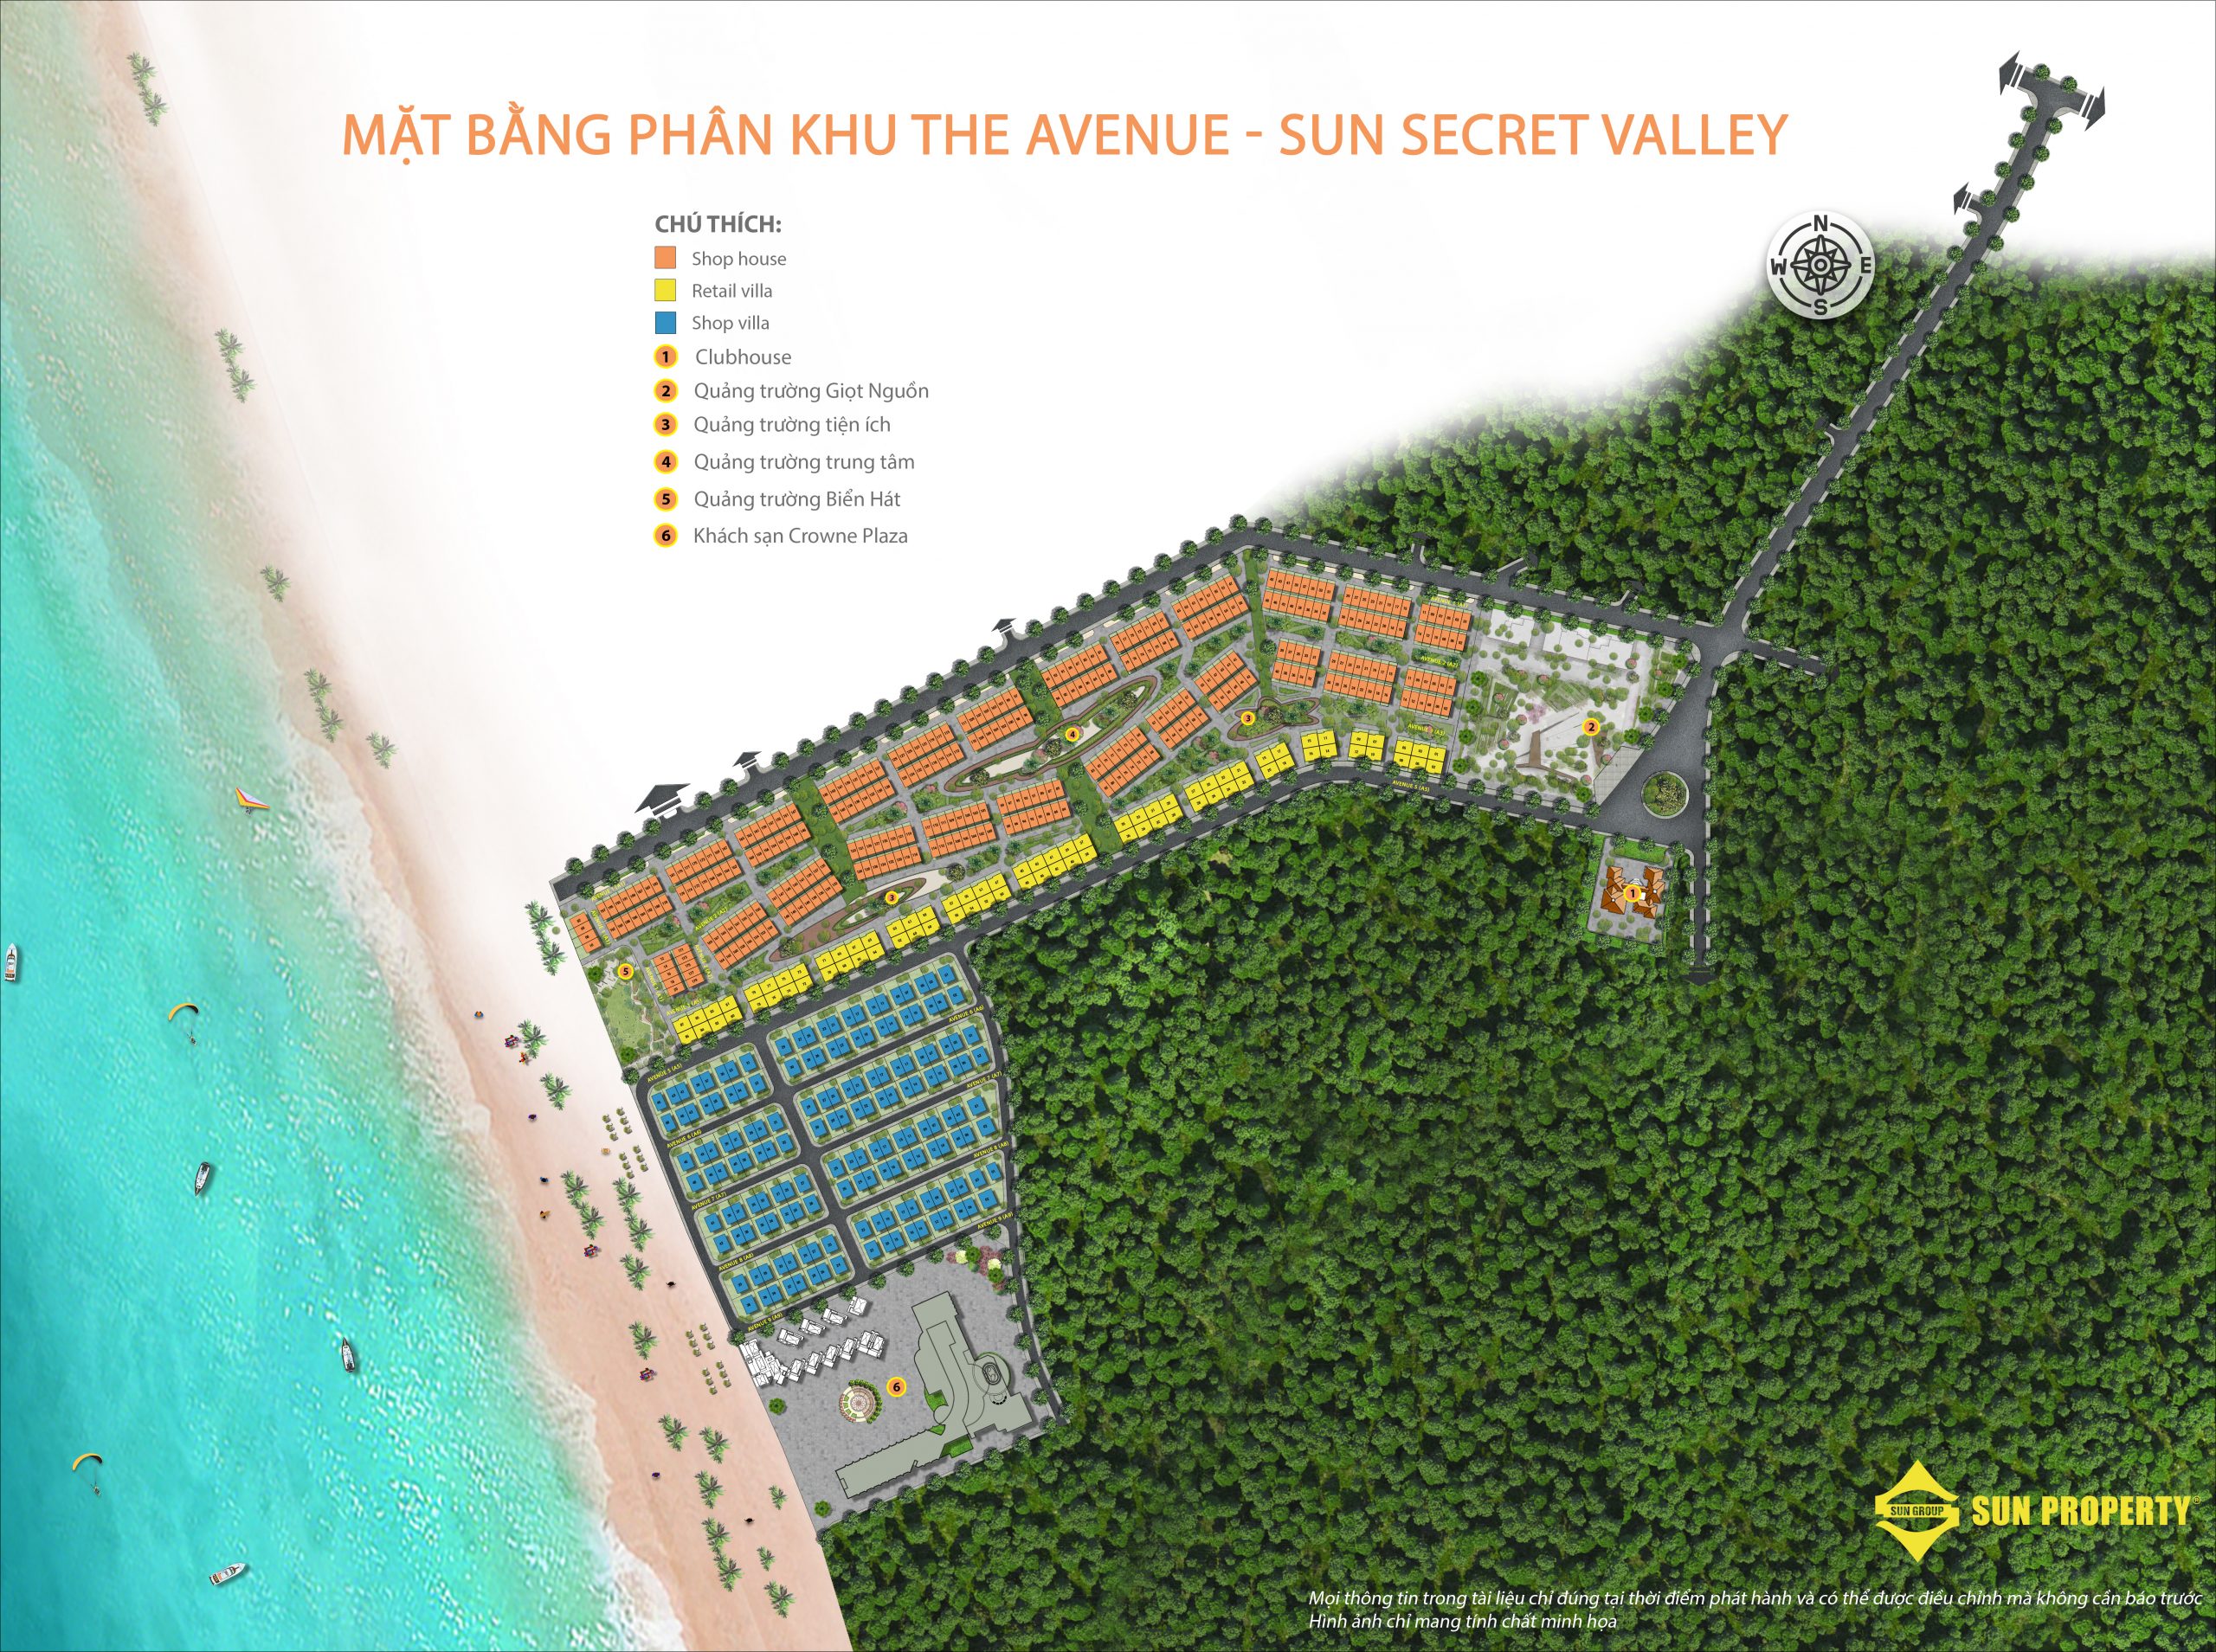 mat bang the avenue sun secret valley